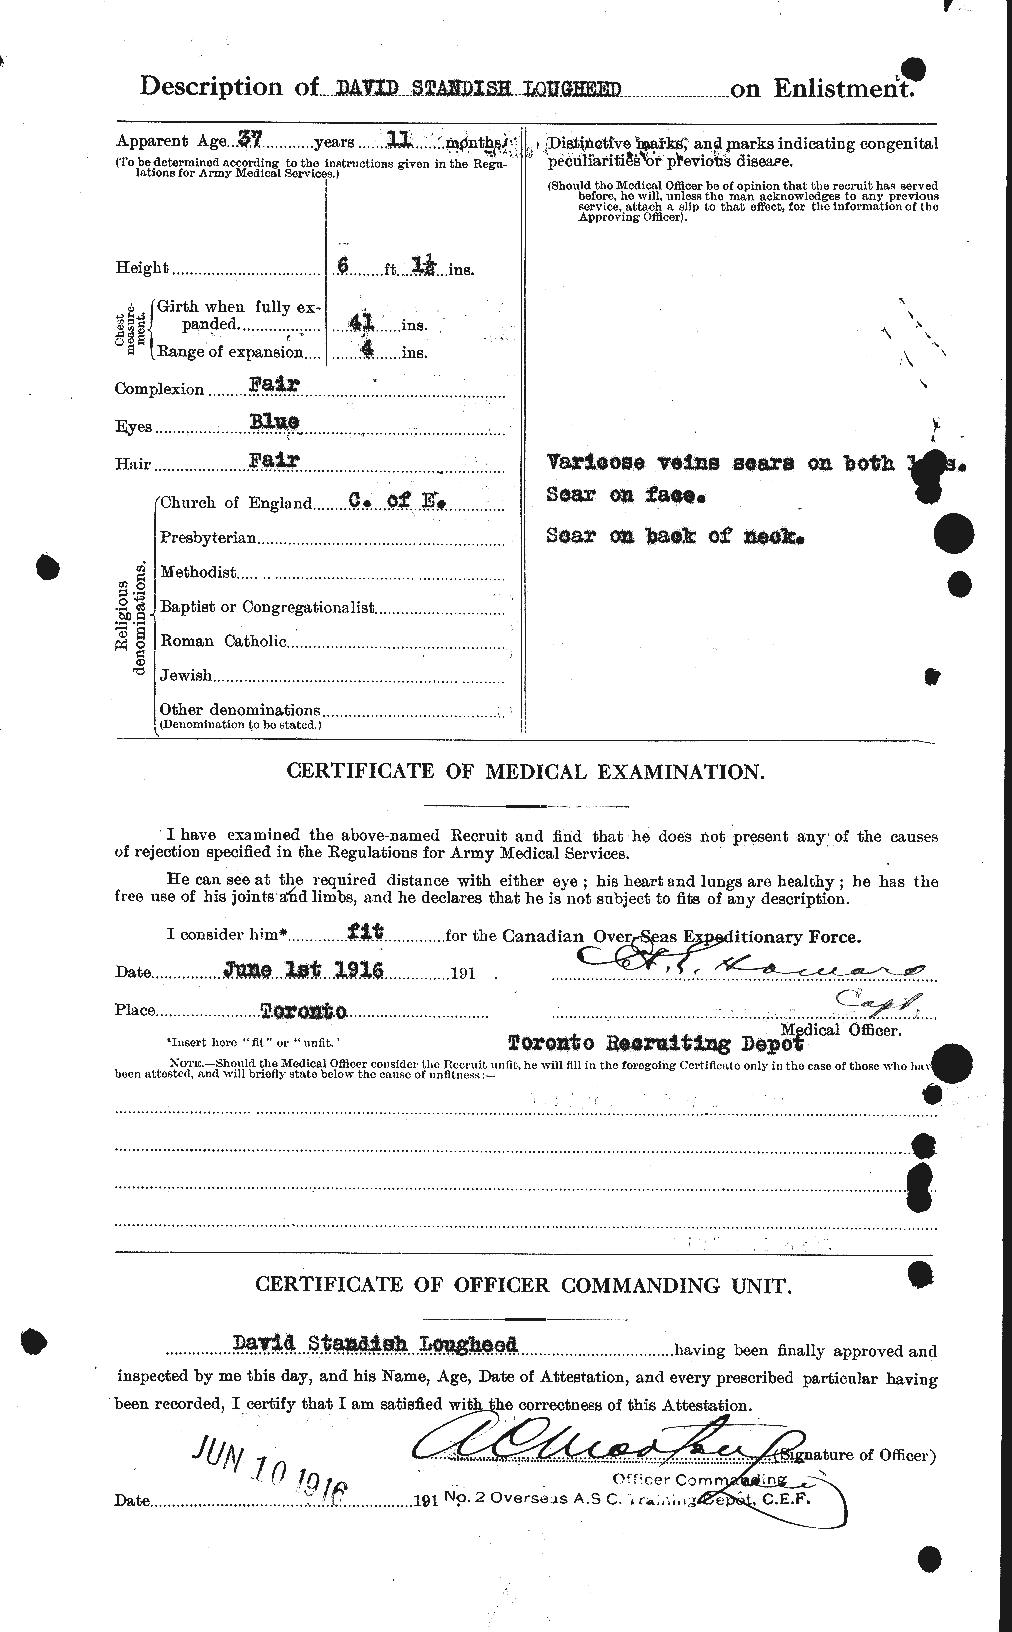 Dossiers du Personnel de la Première Guerre mondiale - CEC 470389b